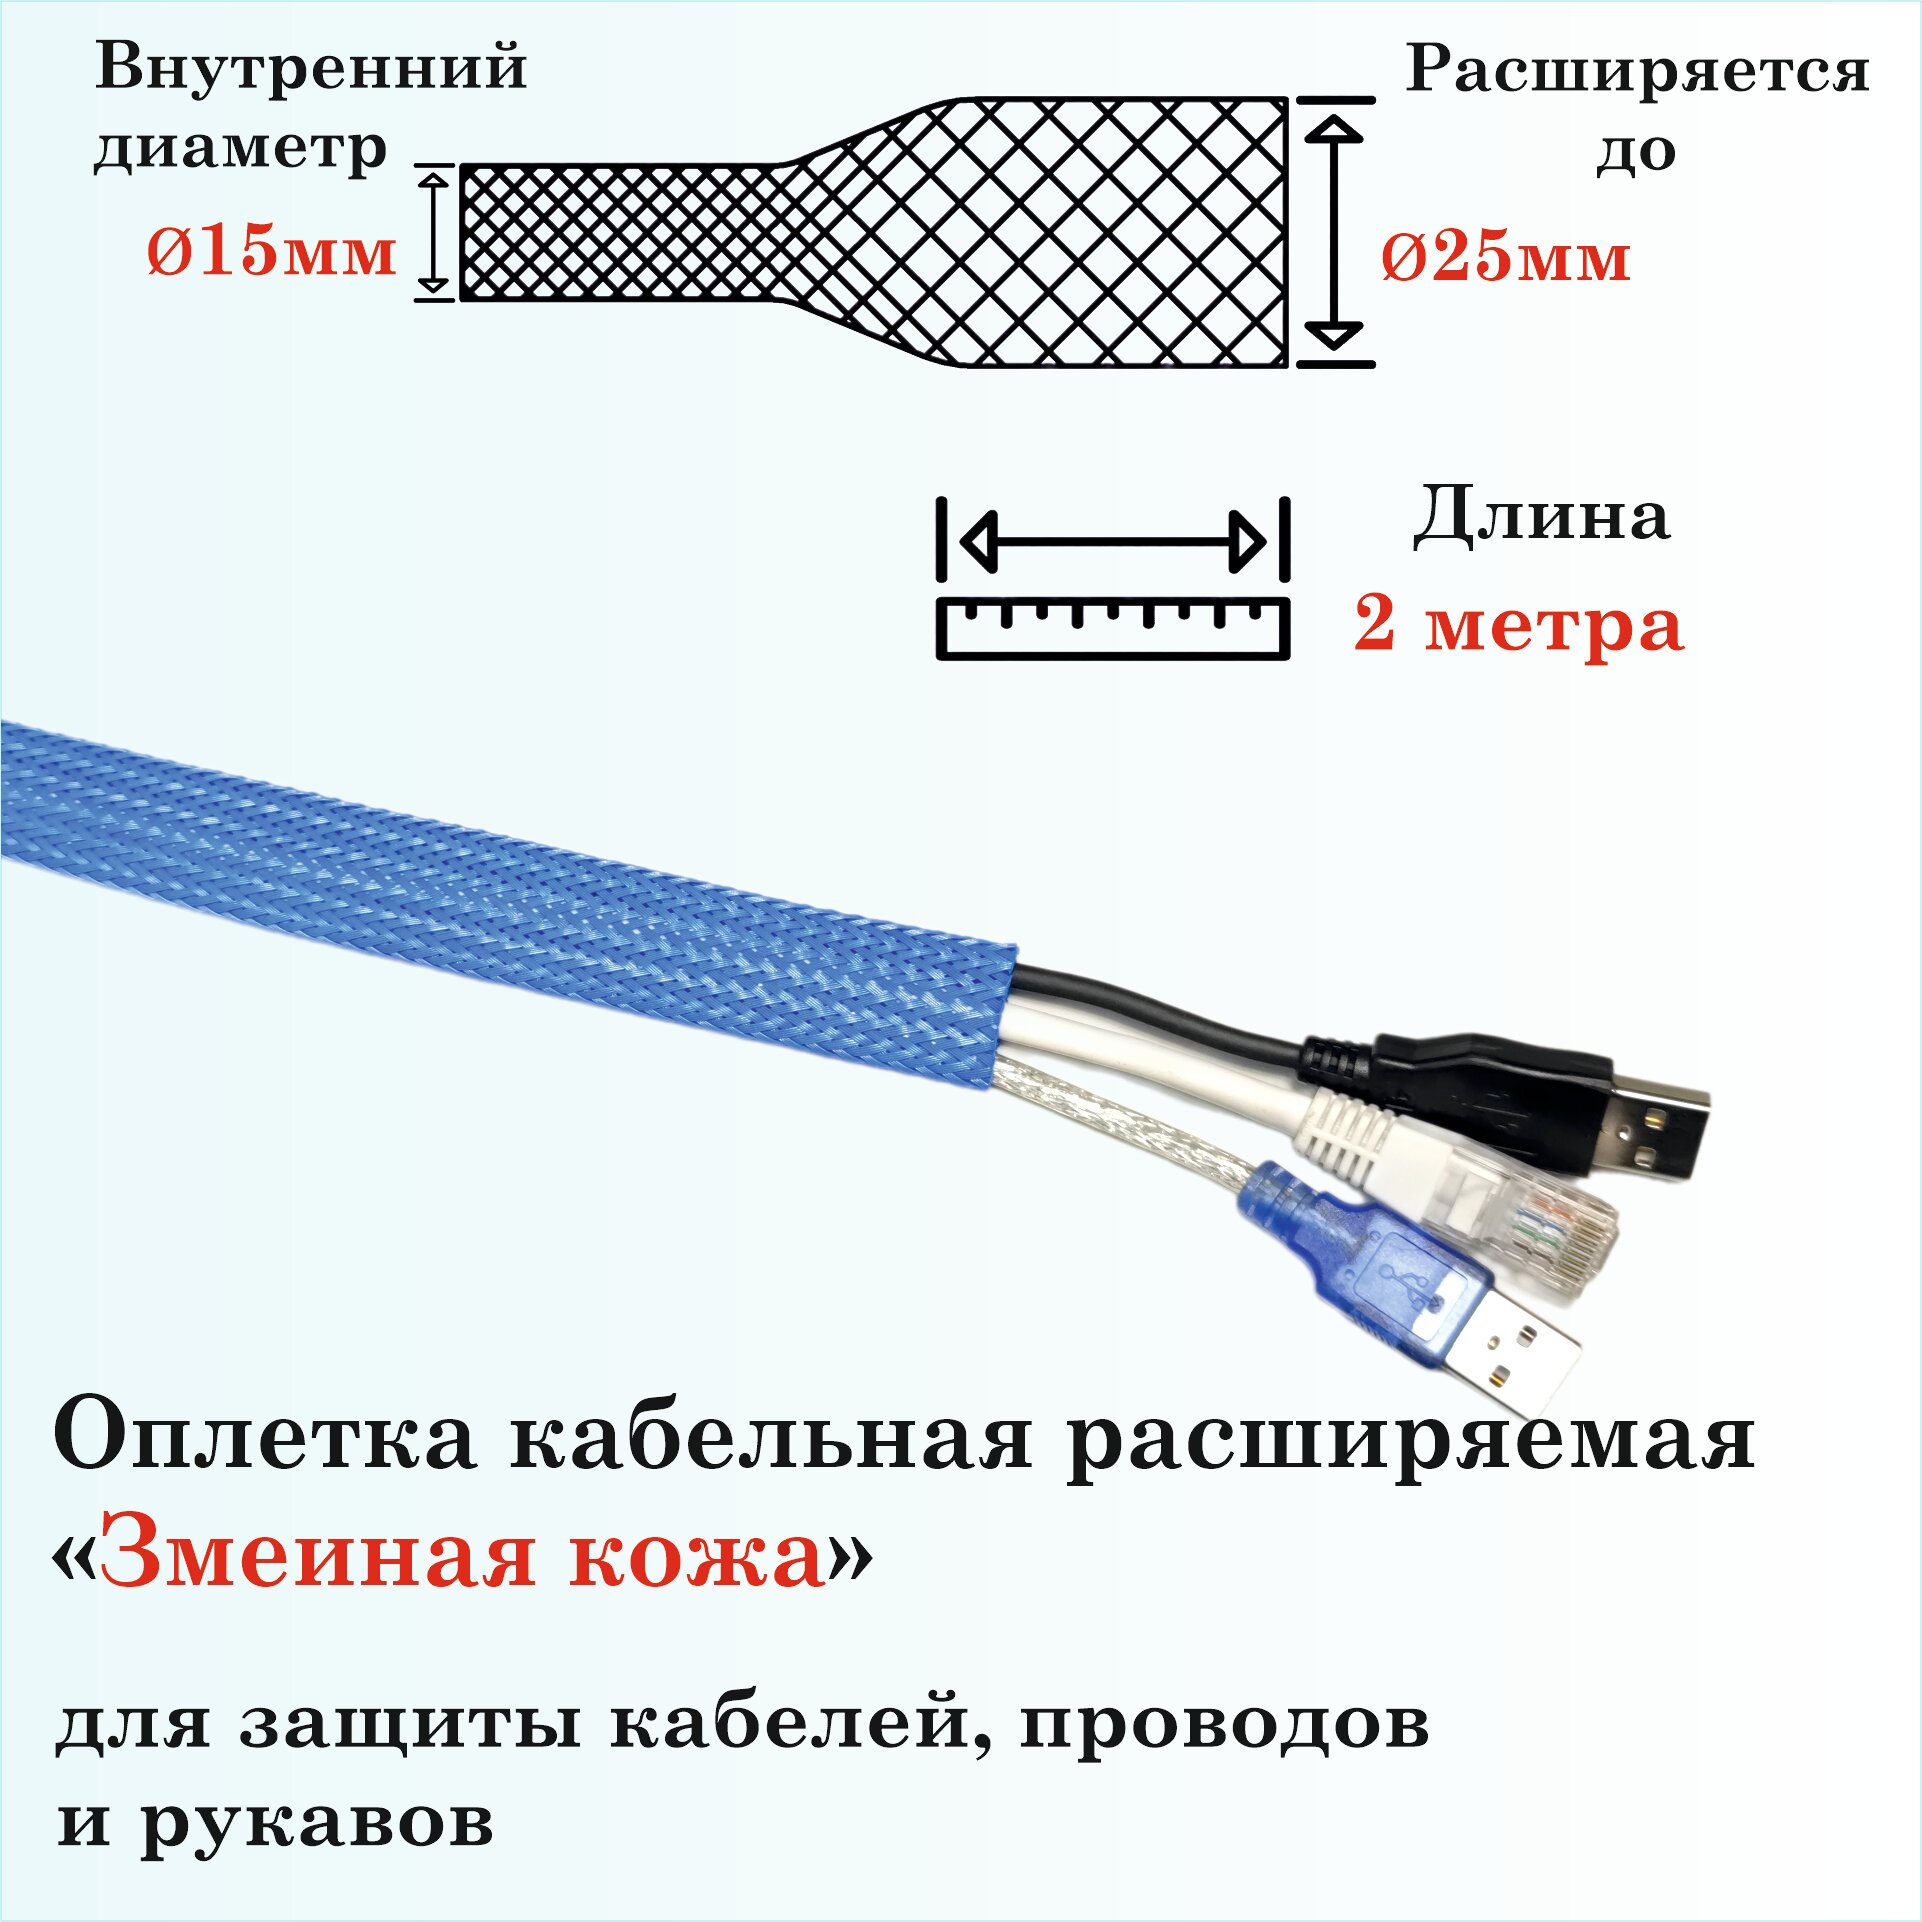 Оплетка кабельная расширяемая для защиты кабелей и проводов "Змеиная кожа" 15мм, 2м, синяя